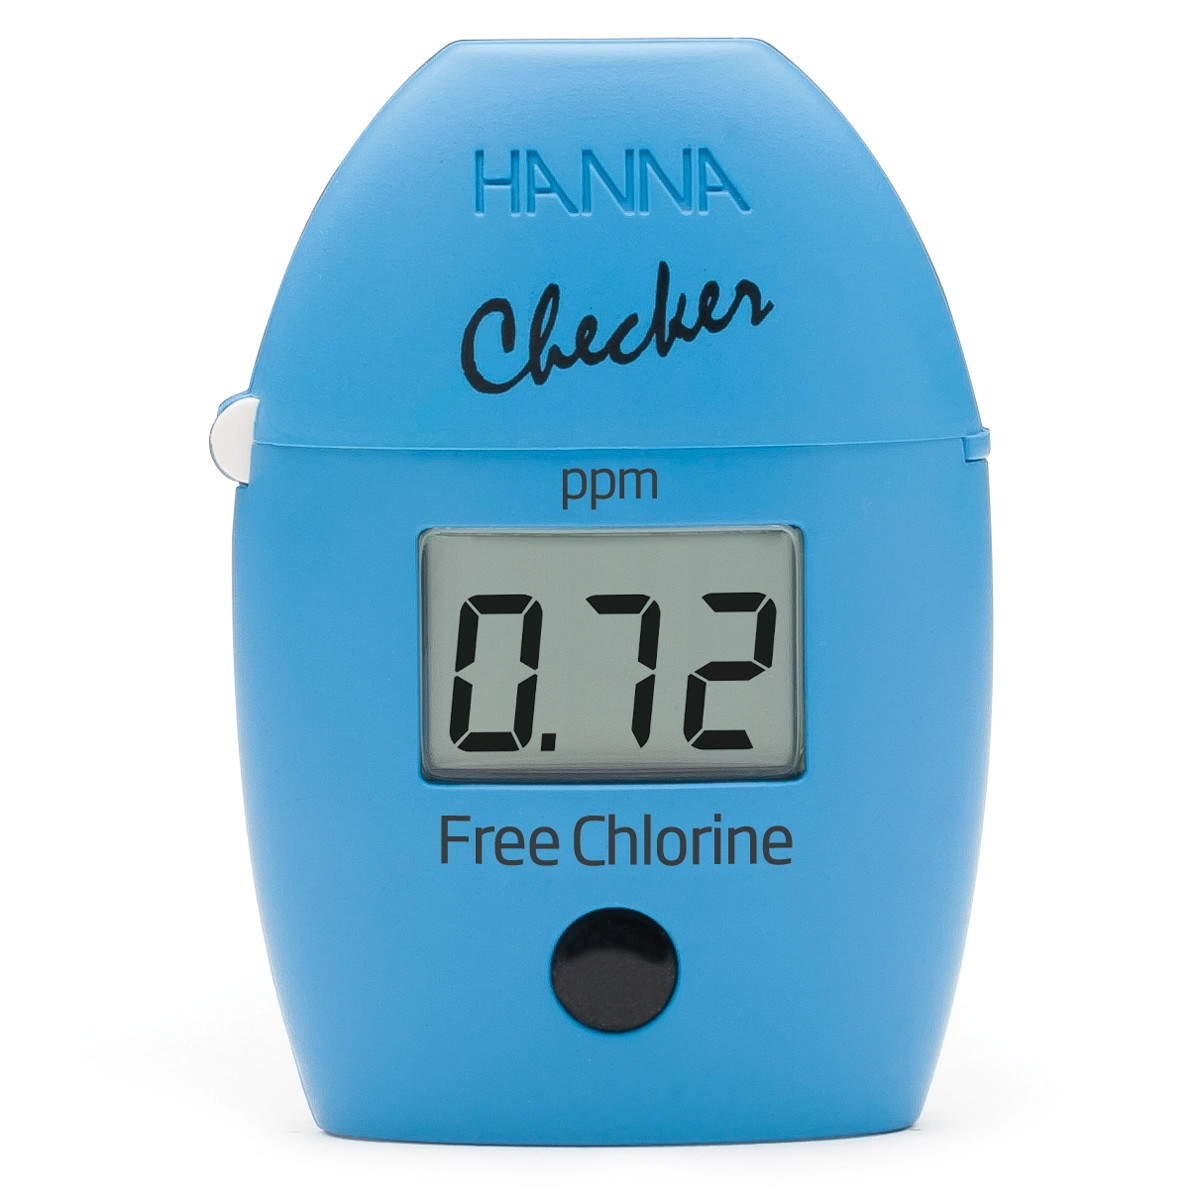 Колориметр серии Checker для определения свободного хлора, HANNA Instruments, 0-2.5 мг/л